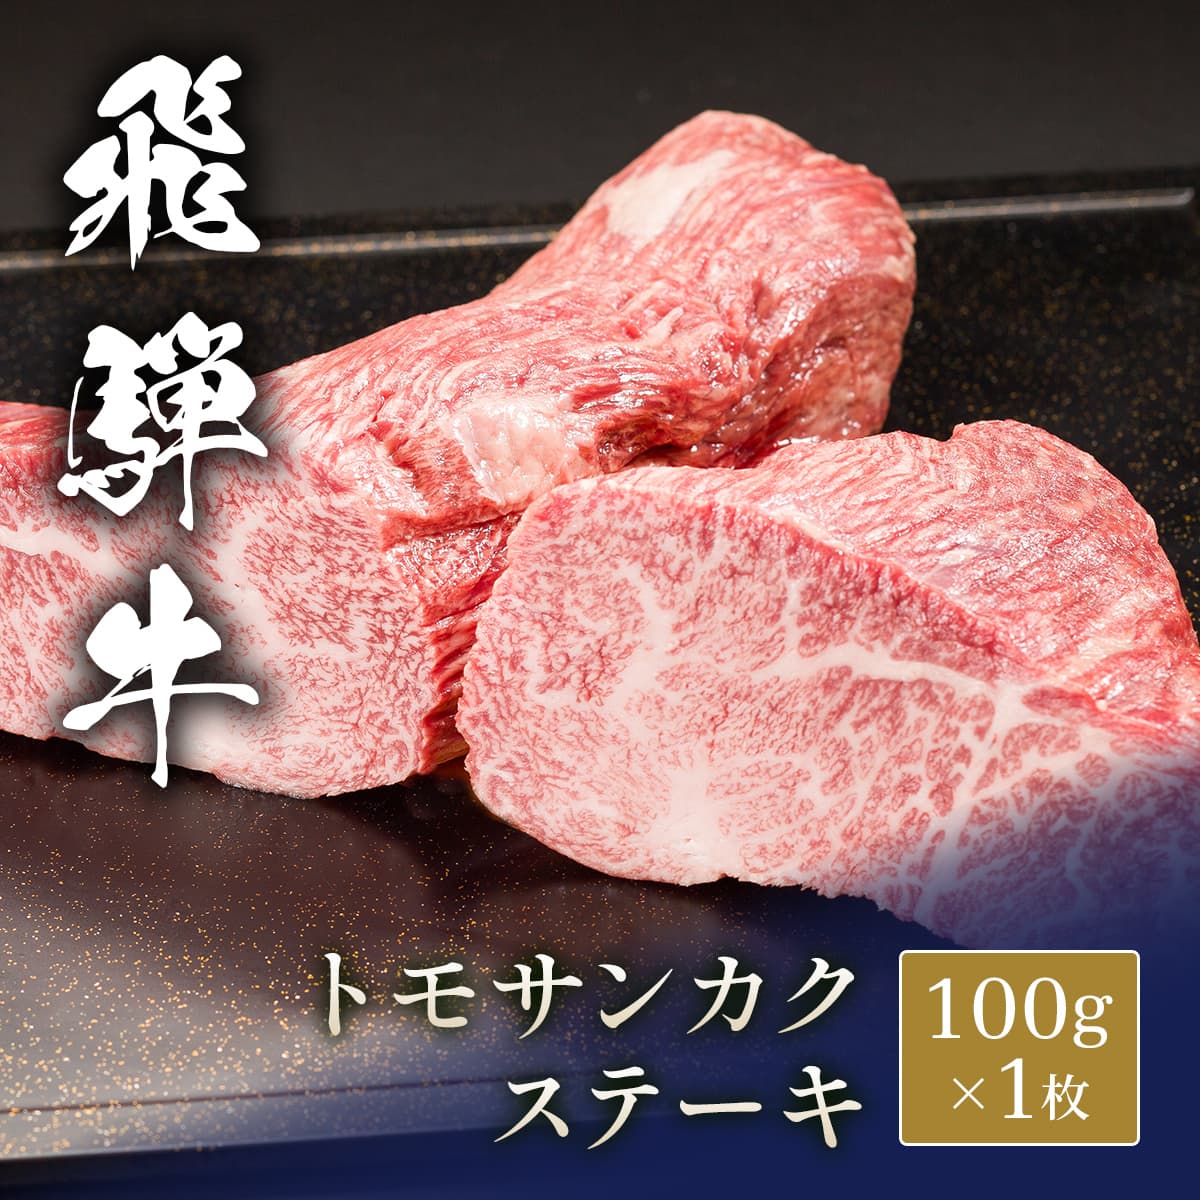 飛騨牛 ステーキ トモサンカク 150g x 1枚